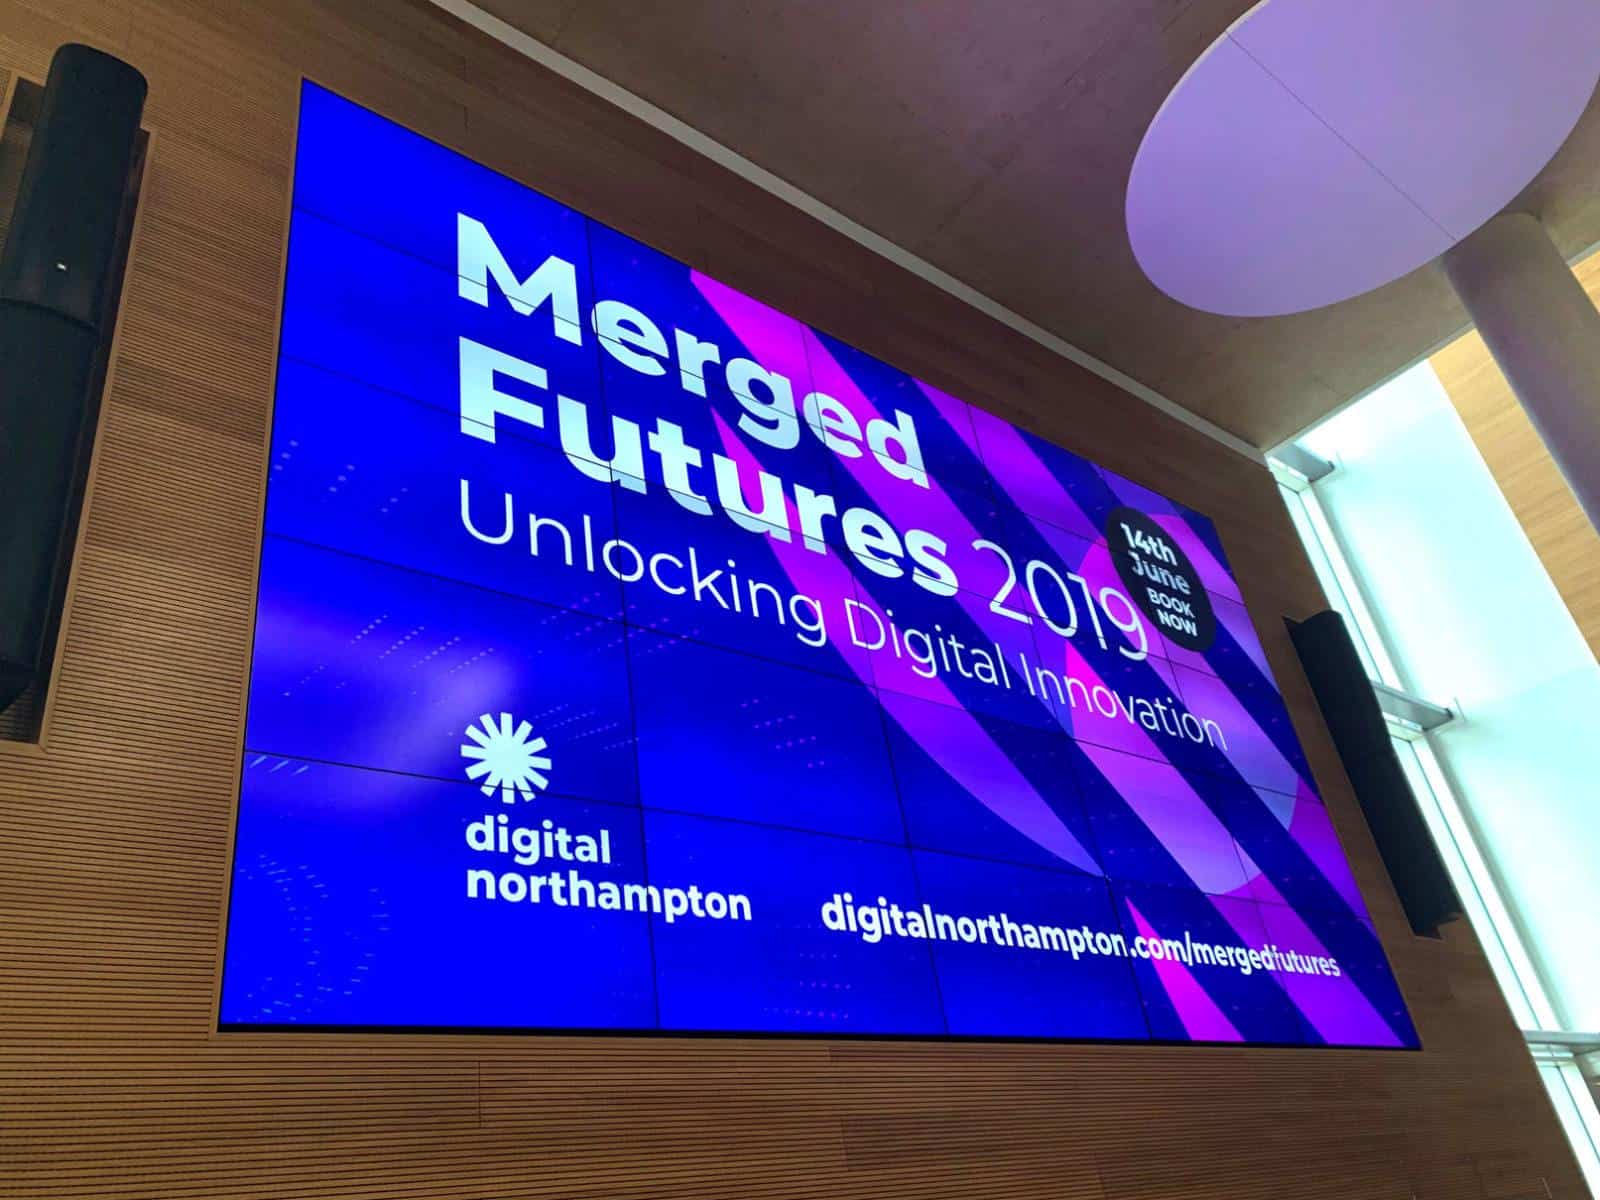 Digital innovation Northampton - Merged Futures